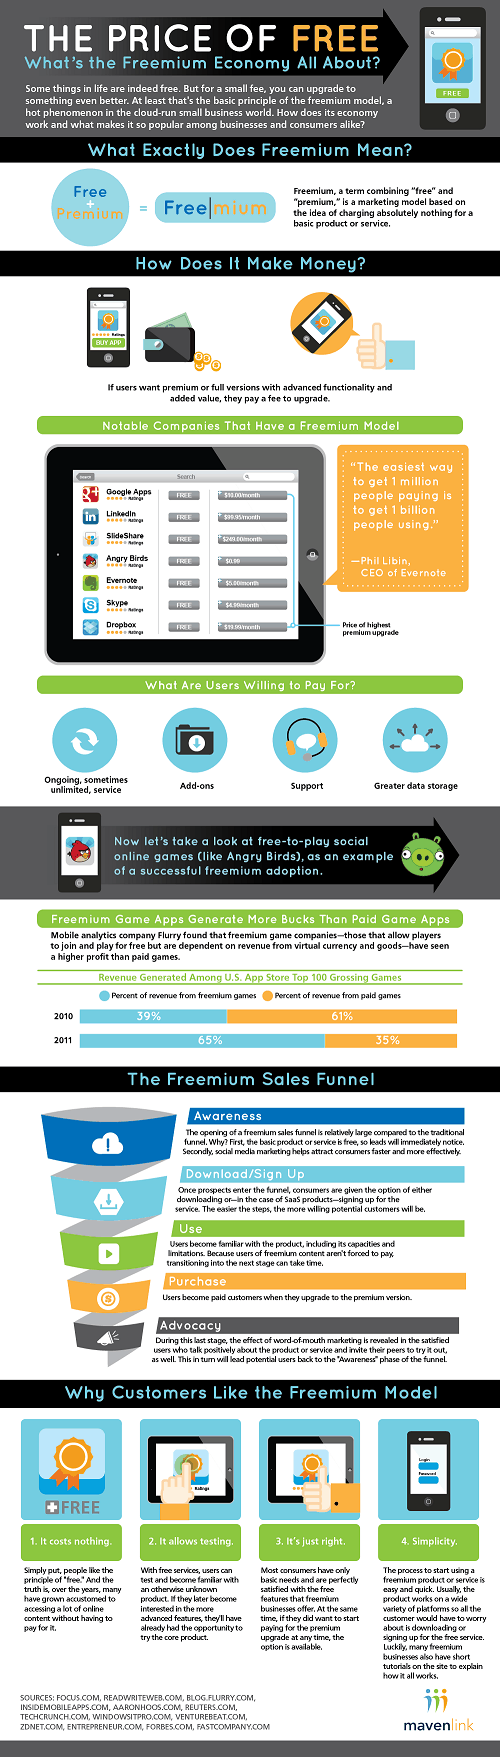 Modelo Freemium - El precio de lo gratuito